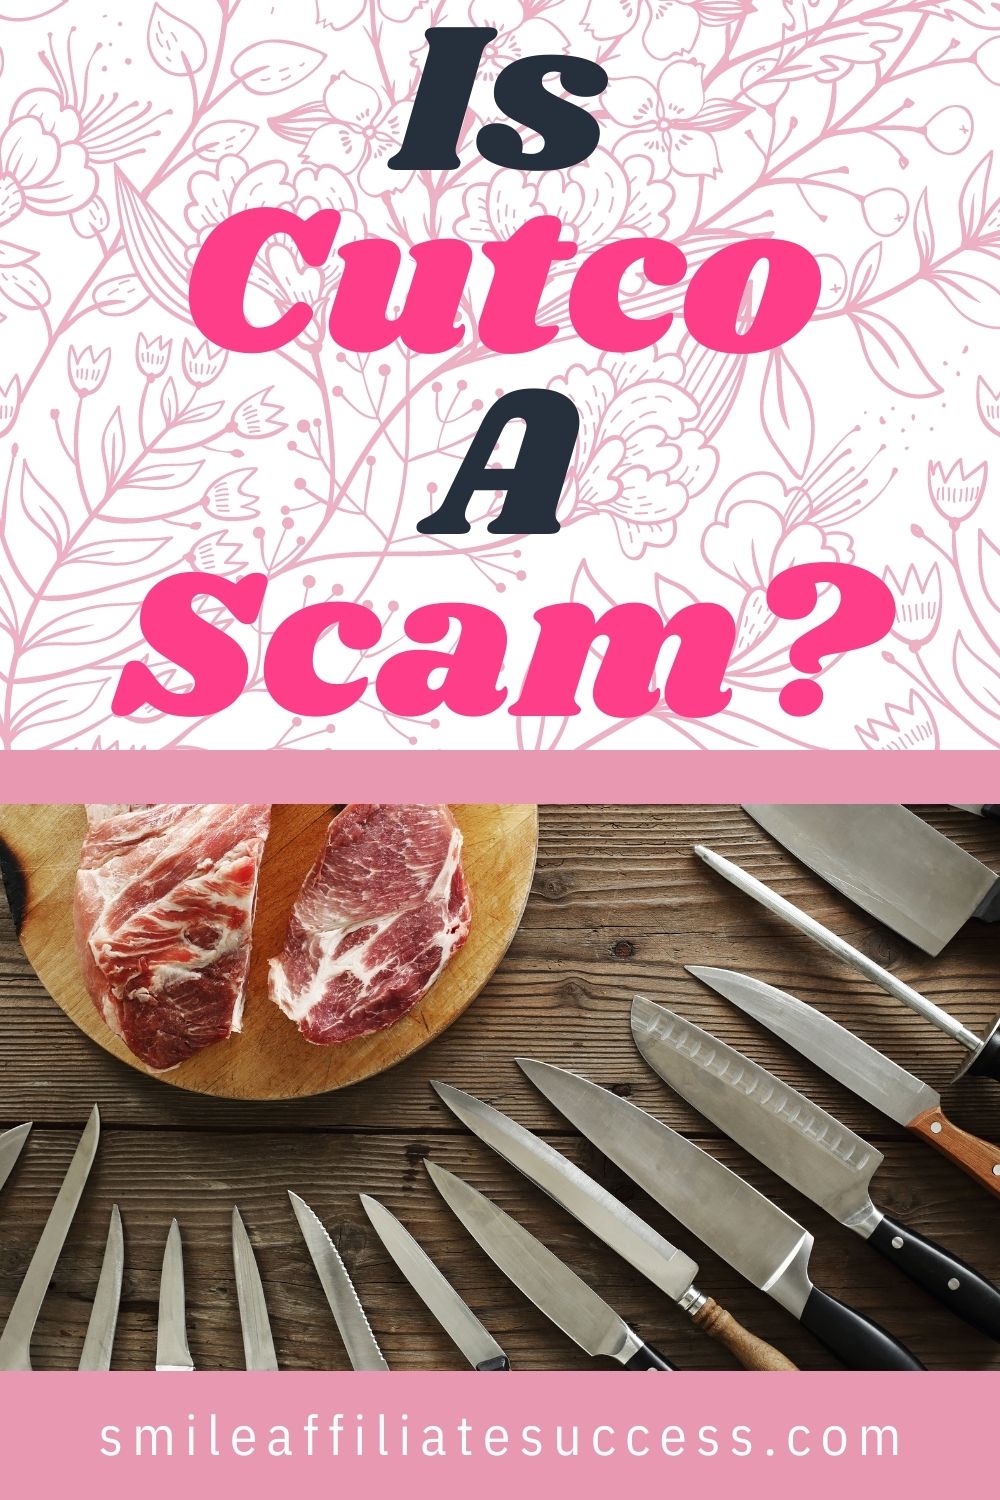 Is Cutco A Scam?